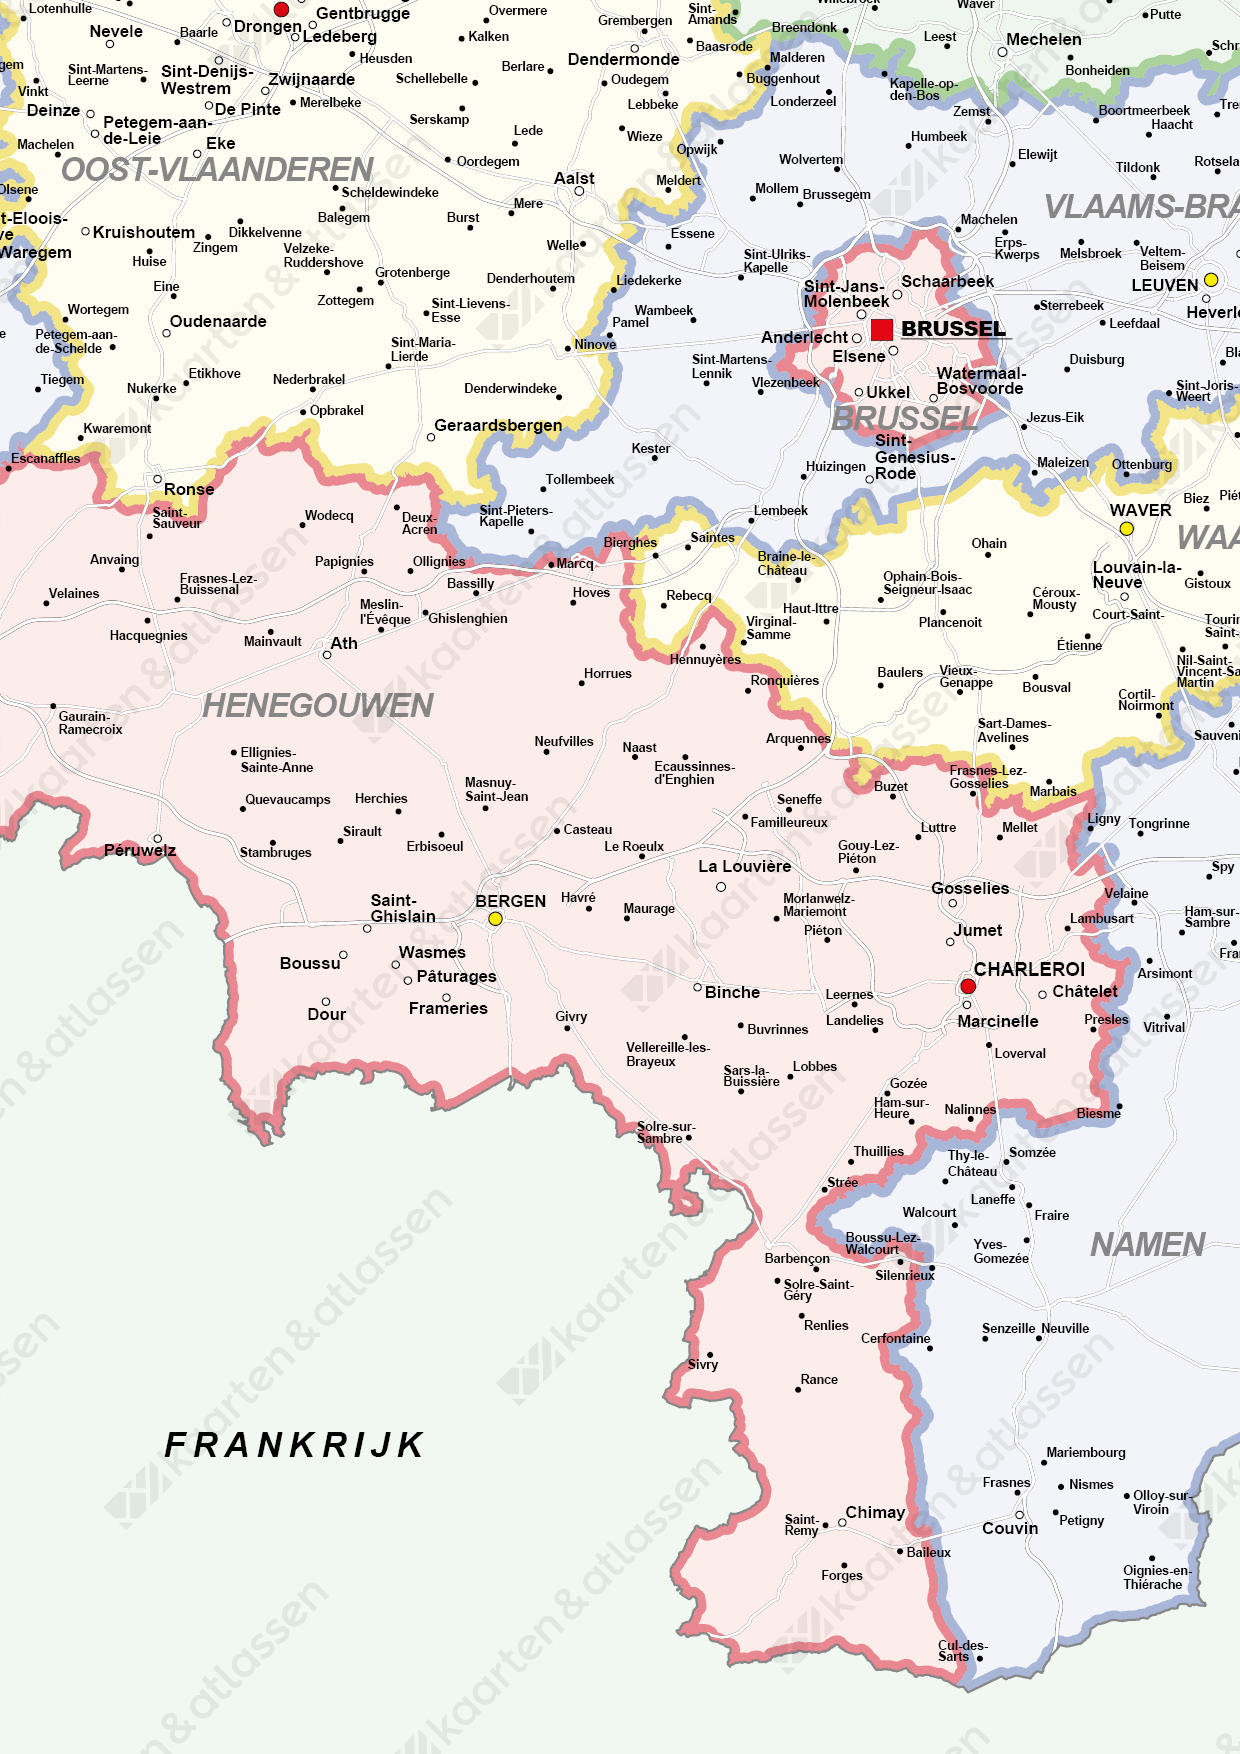 Digitale Frisse Landkaart van België